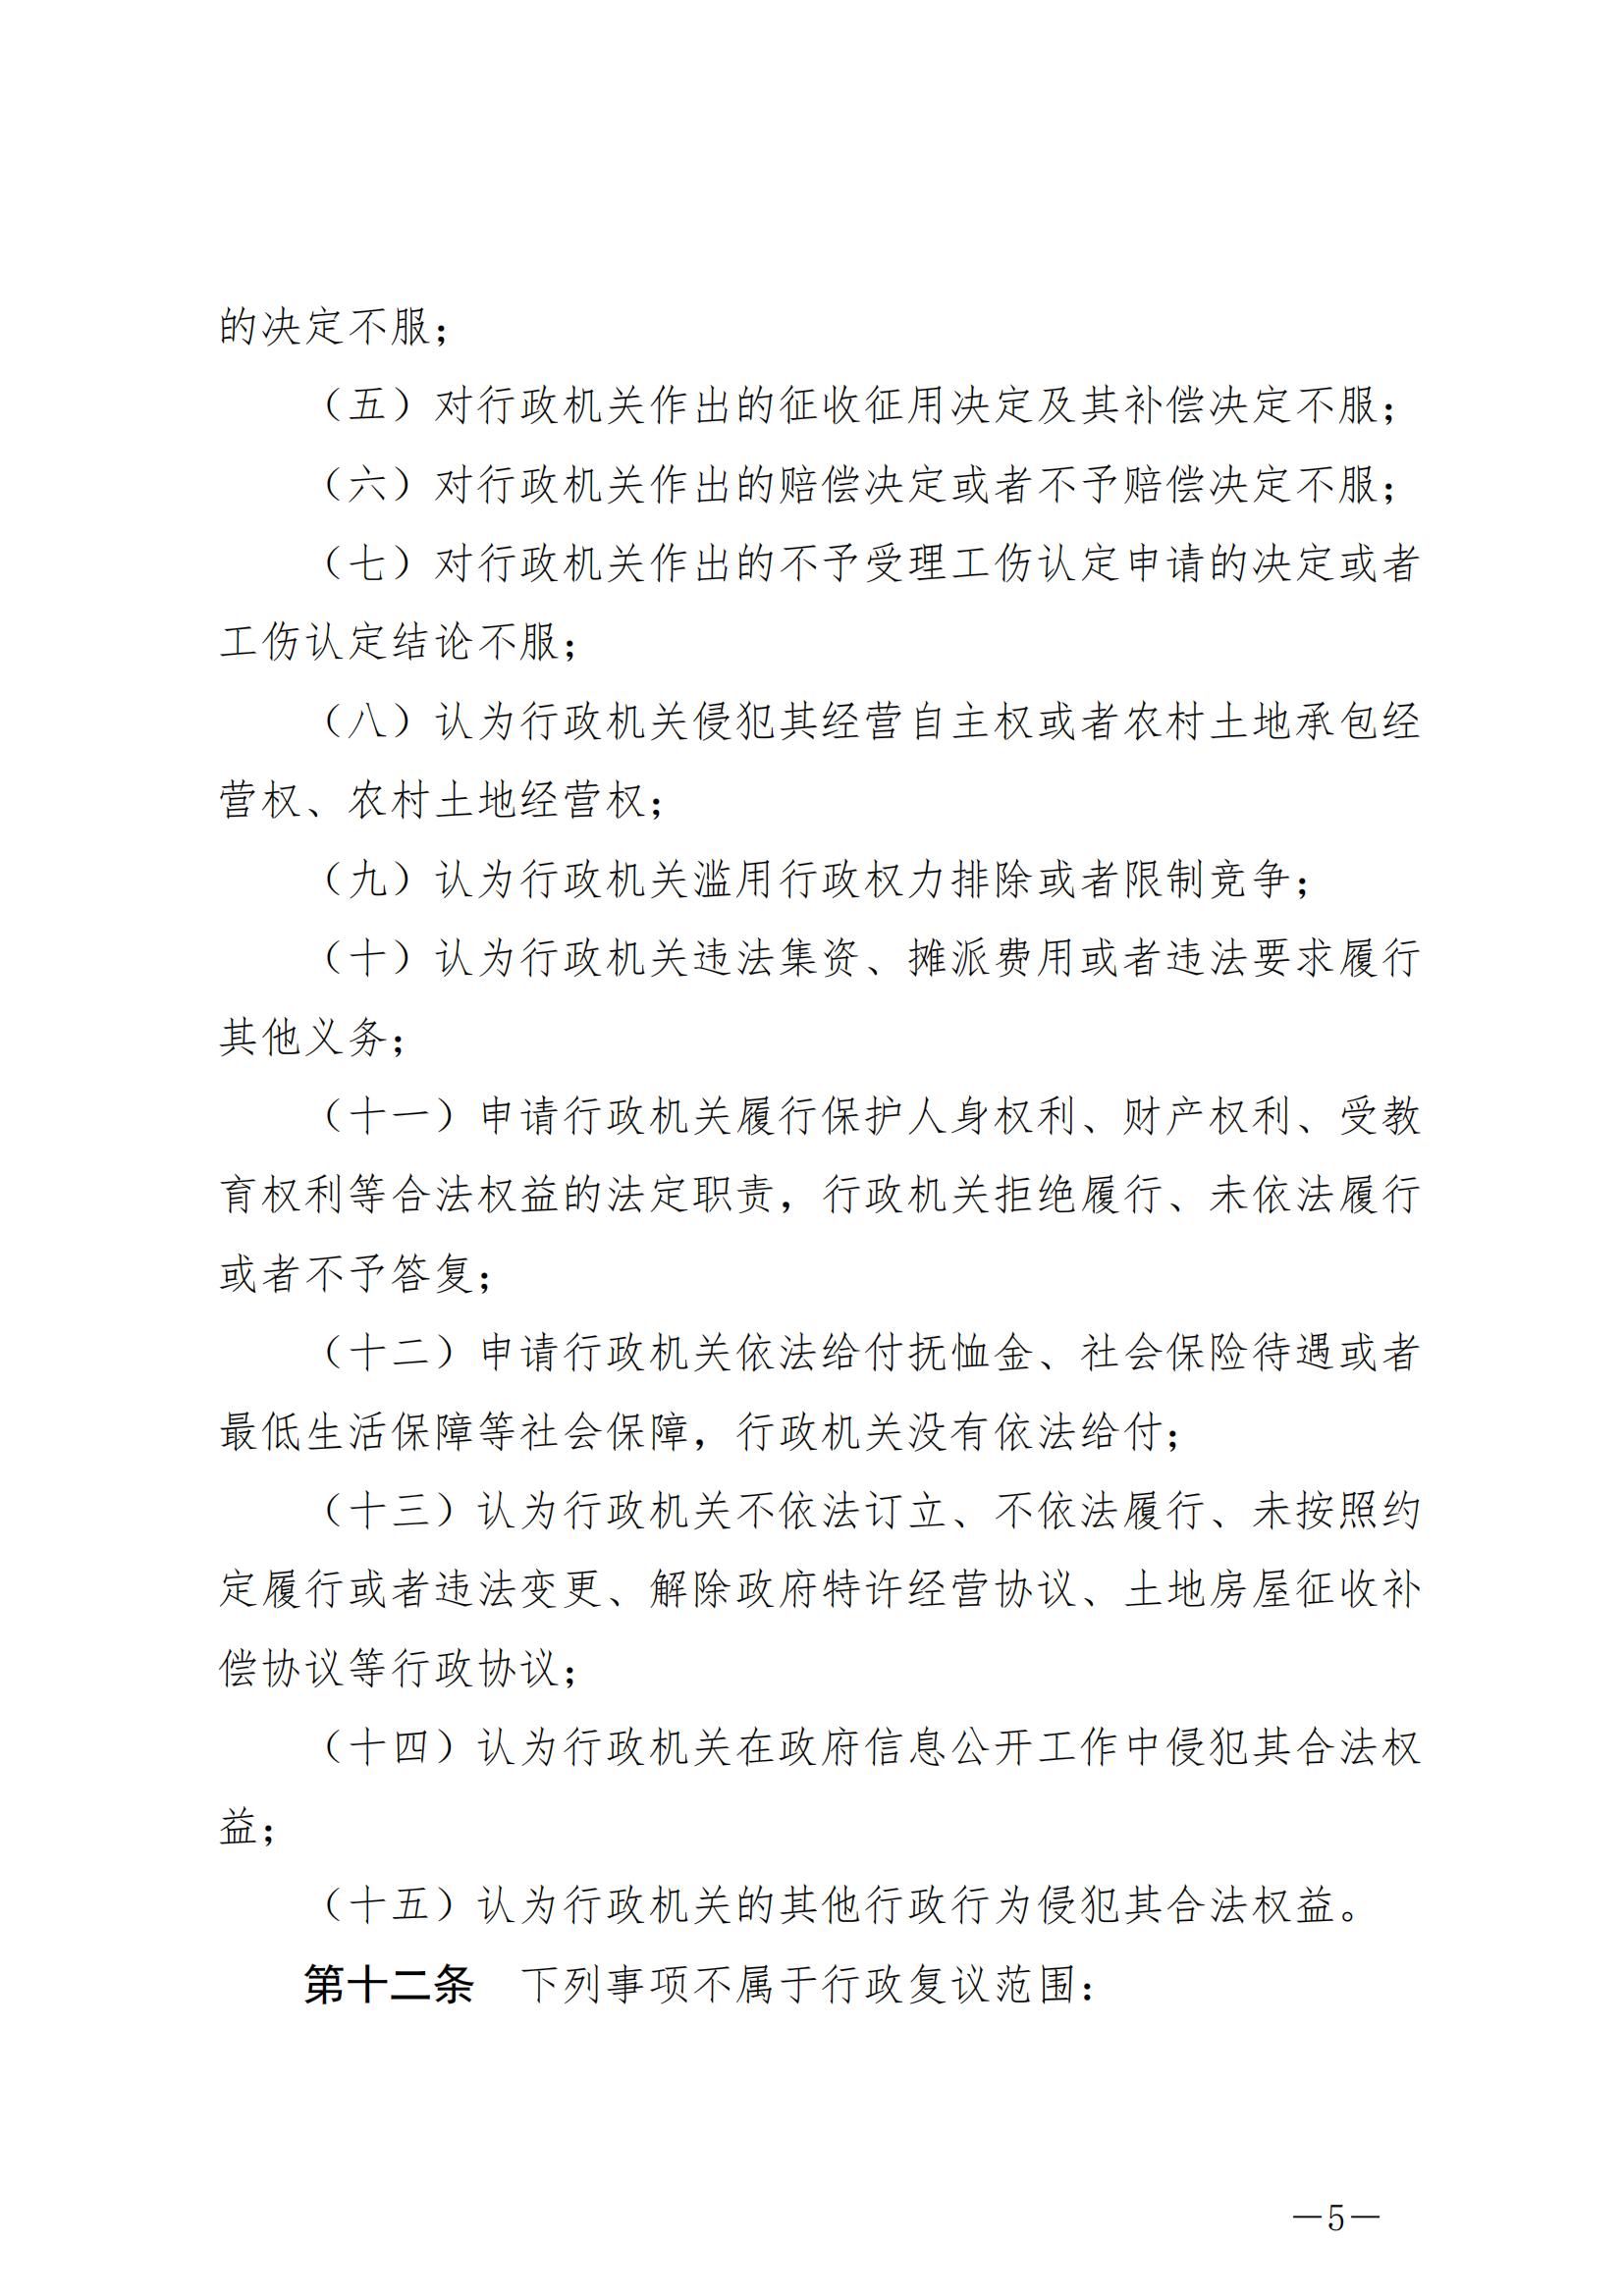 《中华人民共和国行政复议法》_20231204154310_04.jpg